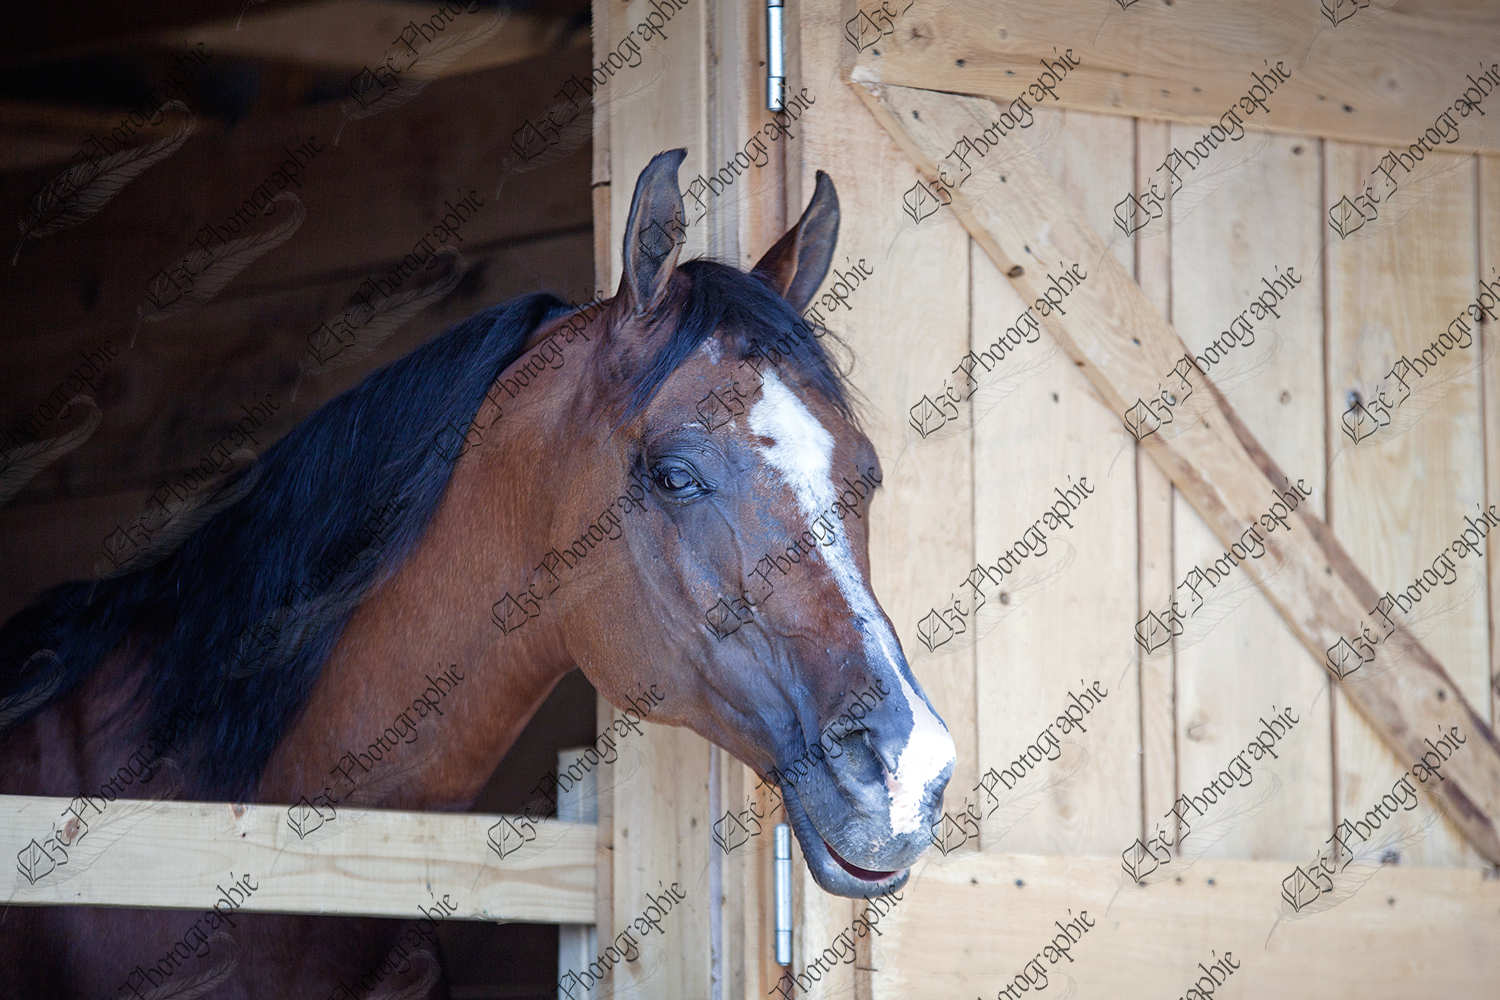 elze_photo_6536_box_cheval_bois_horse_house